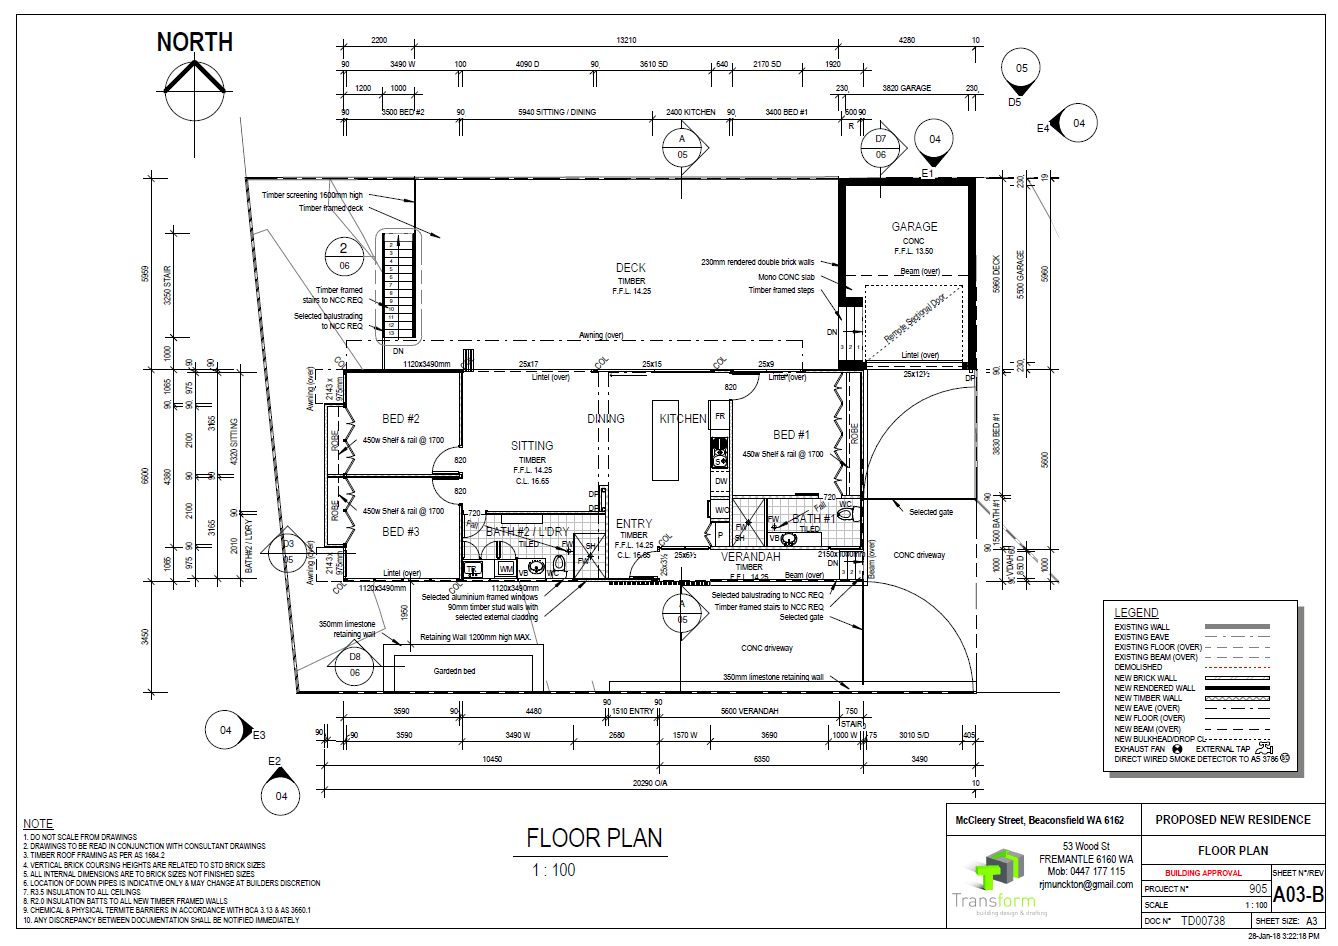 4. Ground Floor Plan